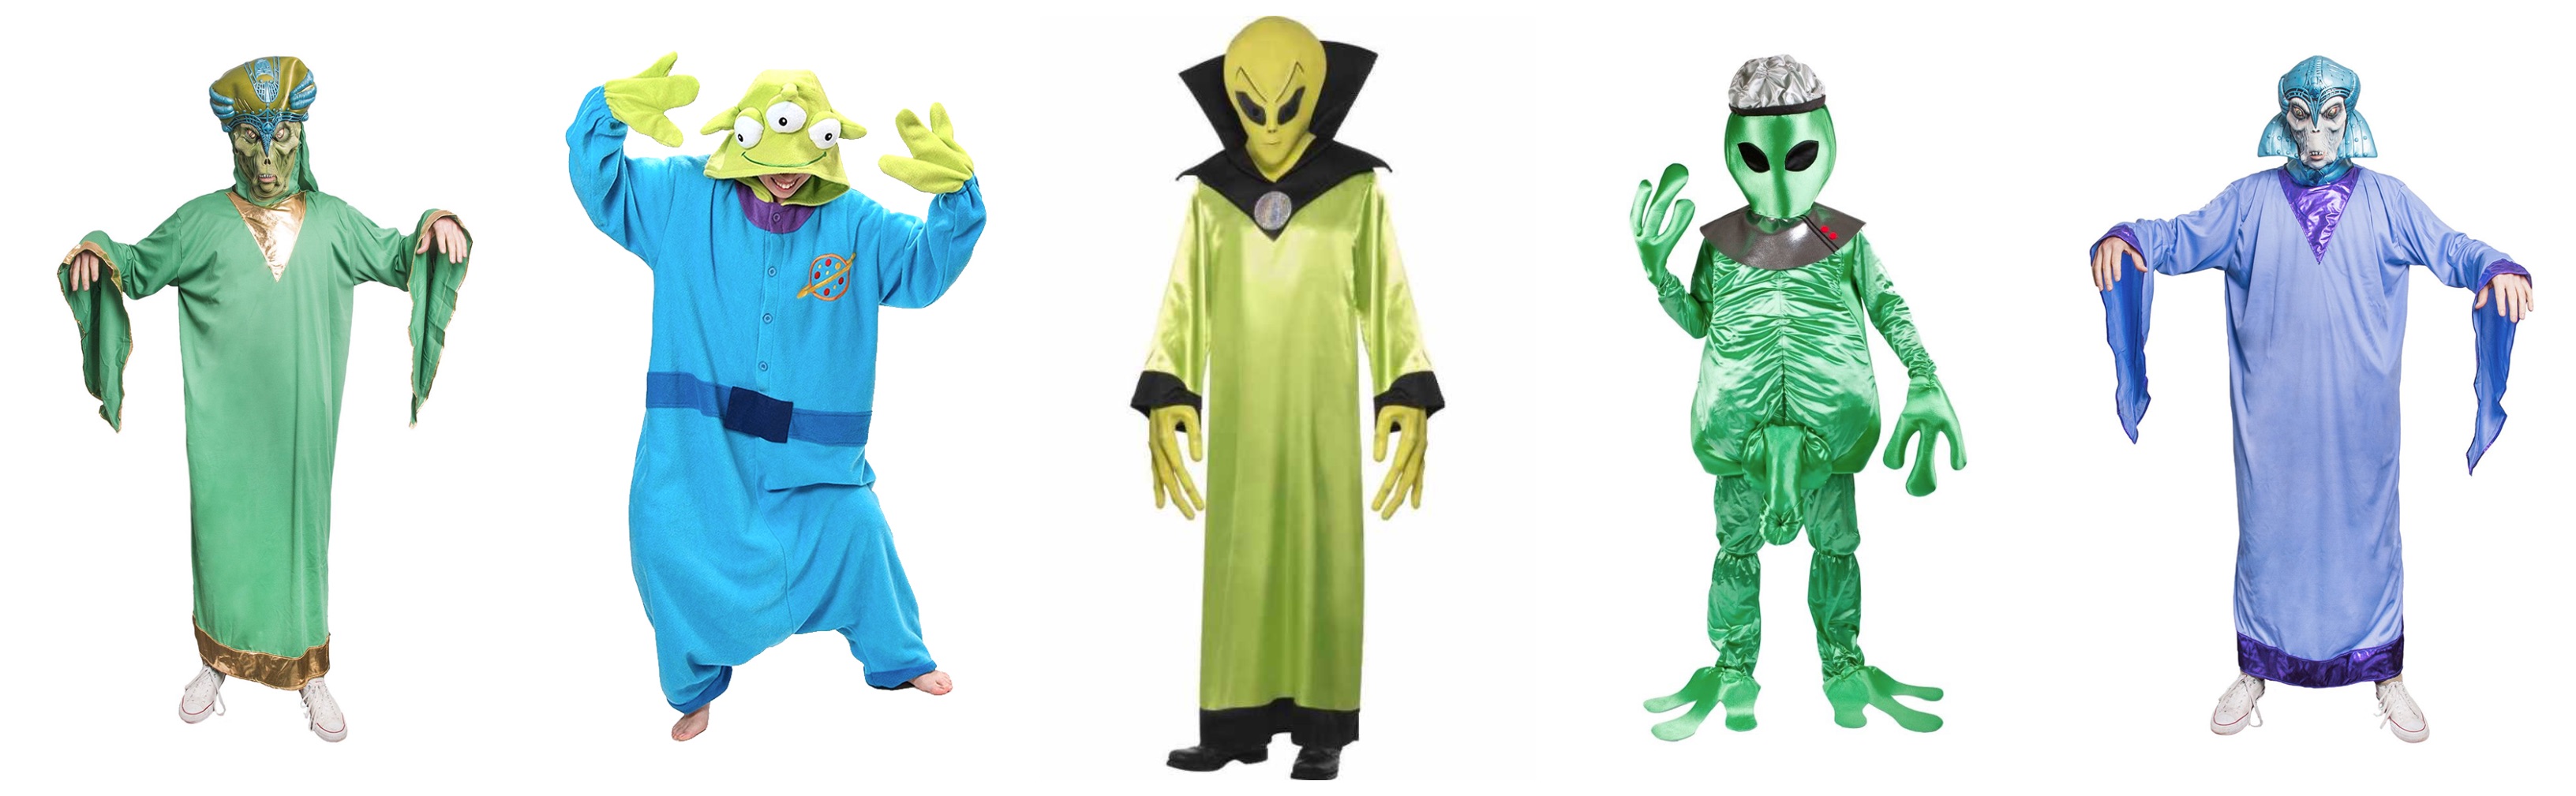 alien kostume til voksne 1 - Alien kostume til voksne